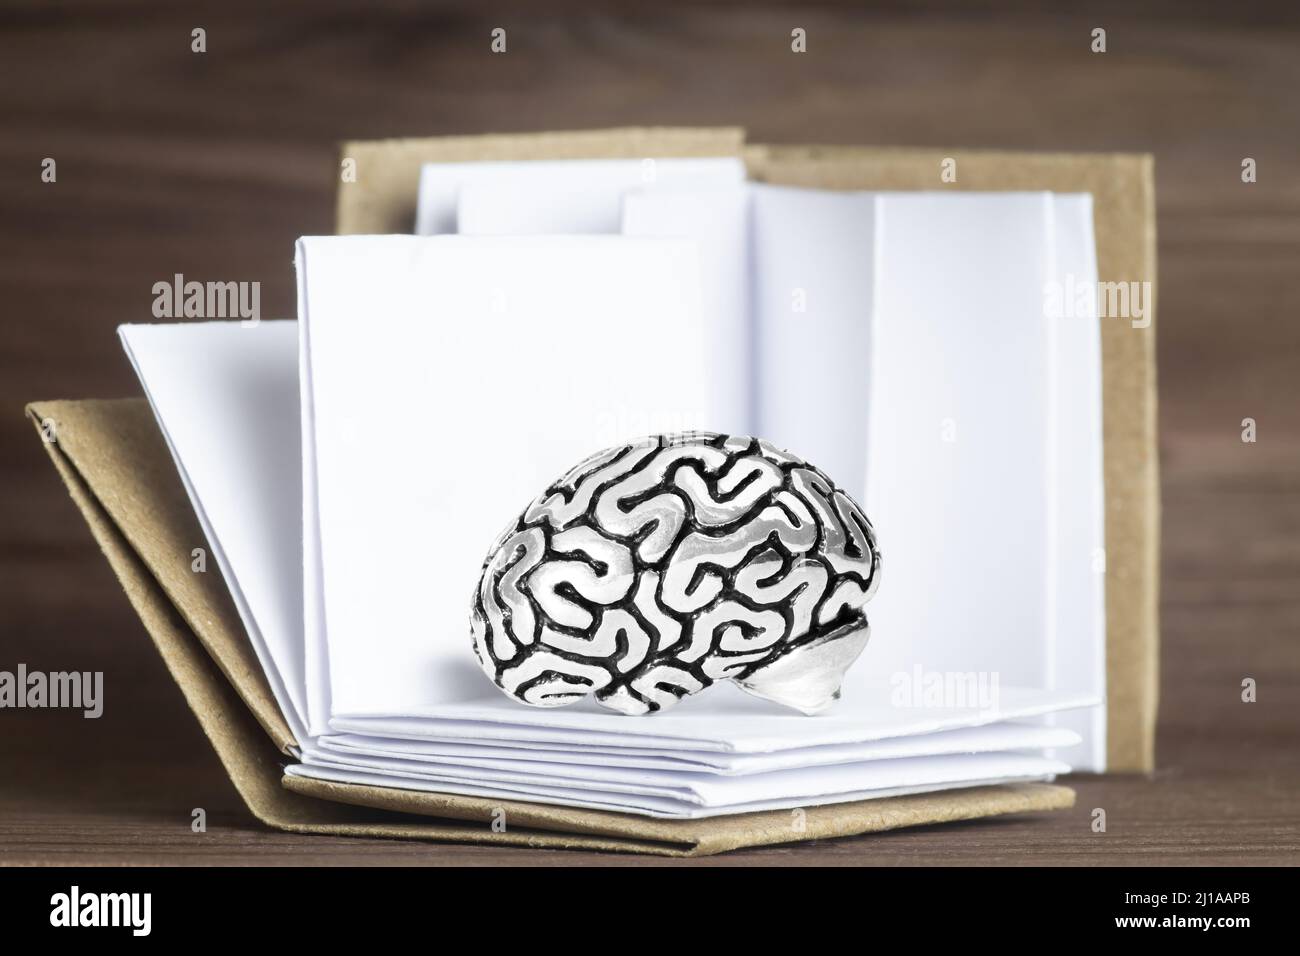 Modèle miniature de cerveau humain situé parmi des livres ouverts sur fond de bois. Concept d'étude créative. Banque D'Images